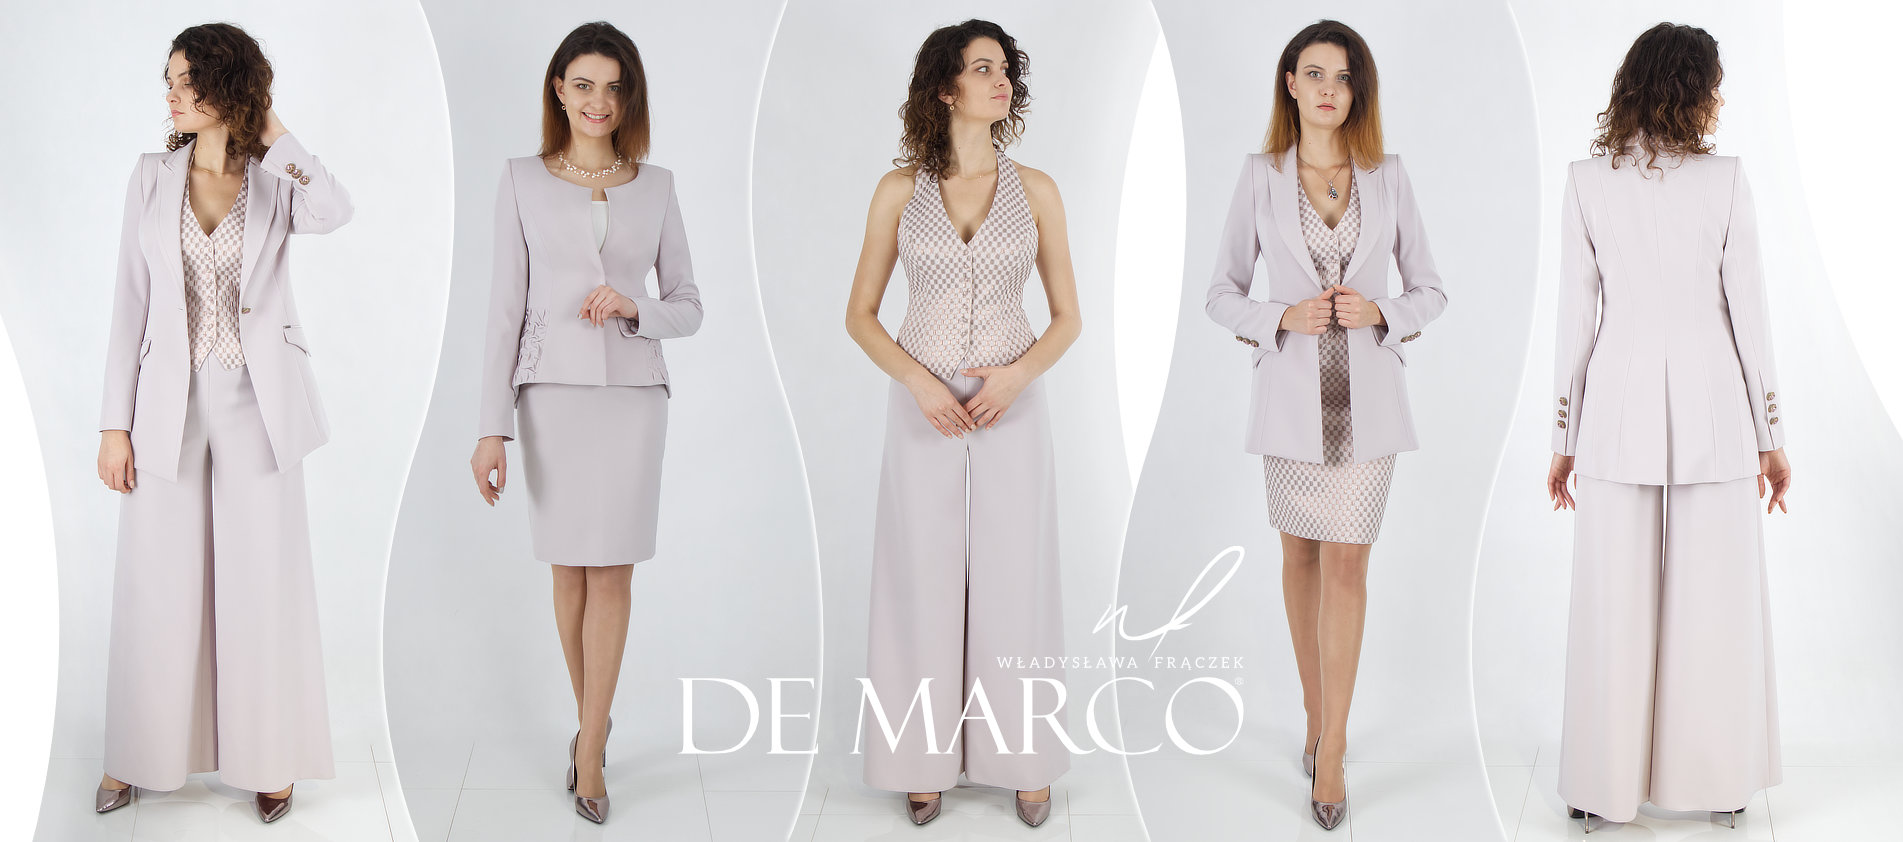 Elegancka odzież damska De Marco: Twoja Odzież, Twój Styl. Sklep Internetowy